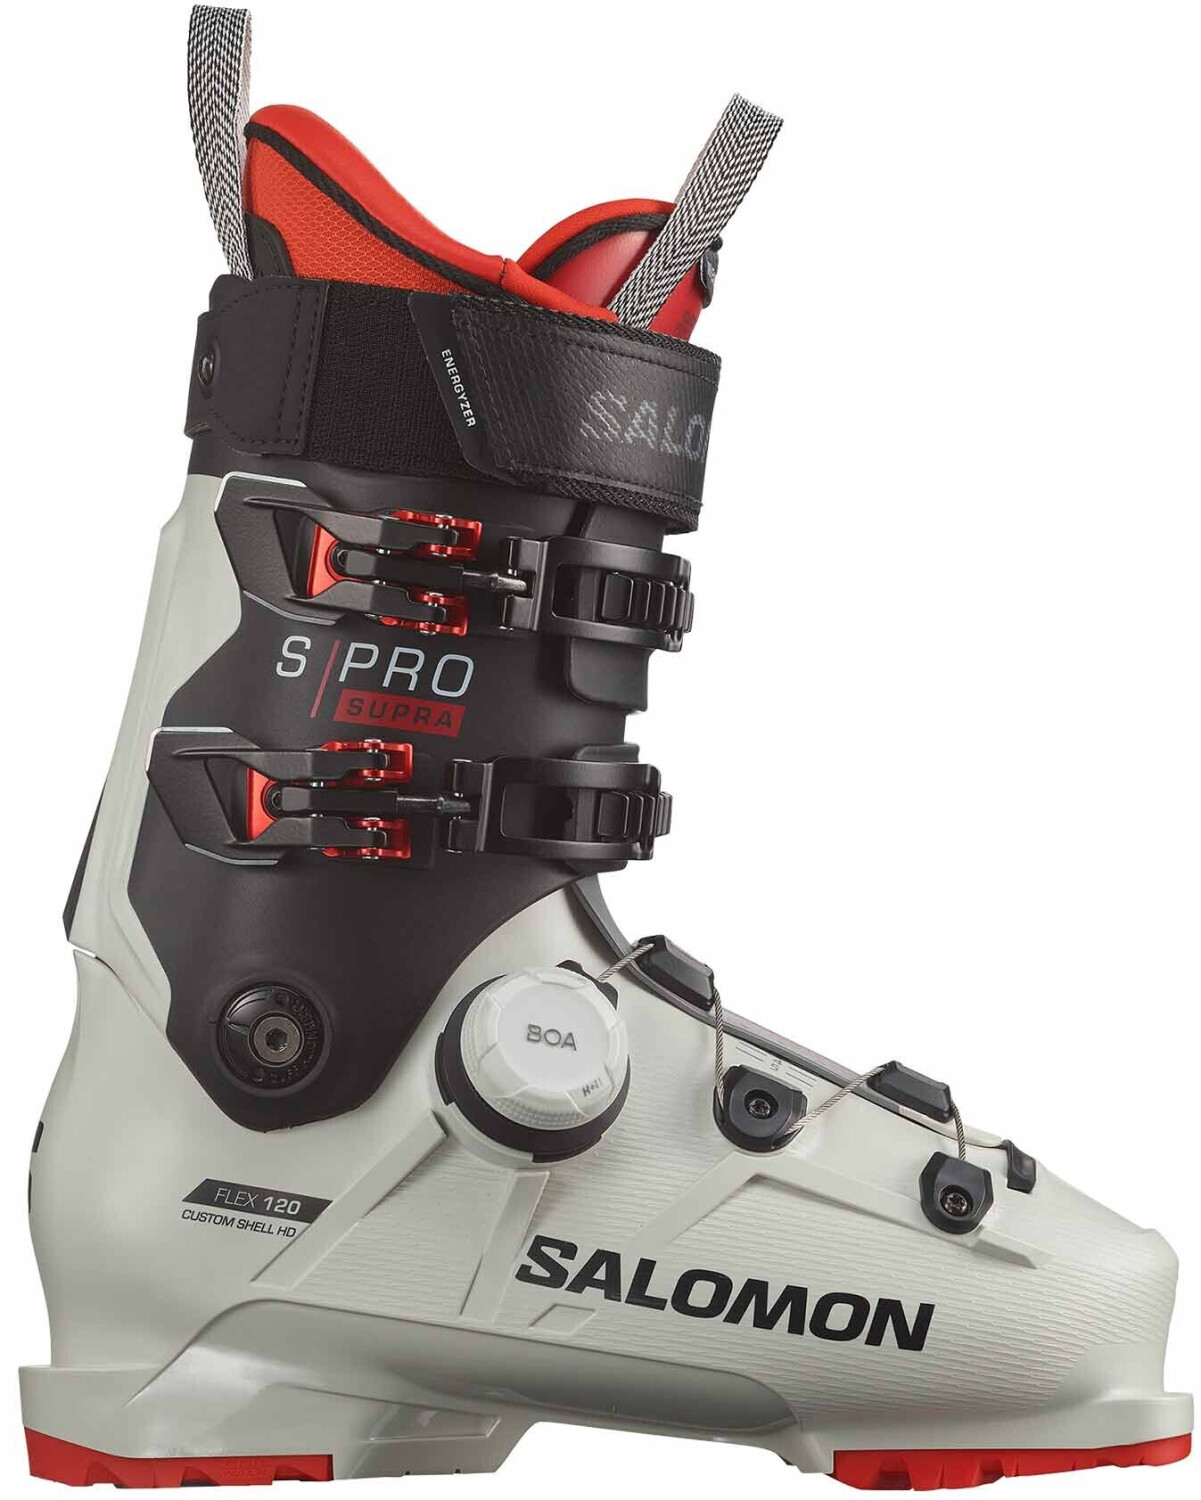 S/pro 100 Chaussure Ski Homme SALOMON NOIR pas cher - Chaussures de ski  SALOMON discount